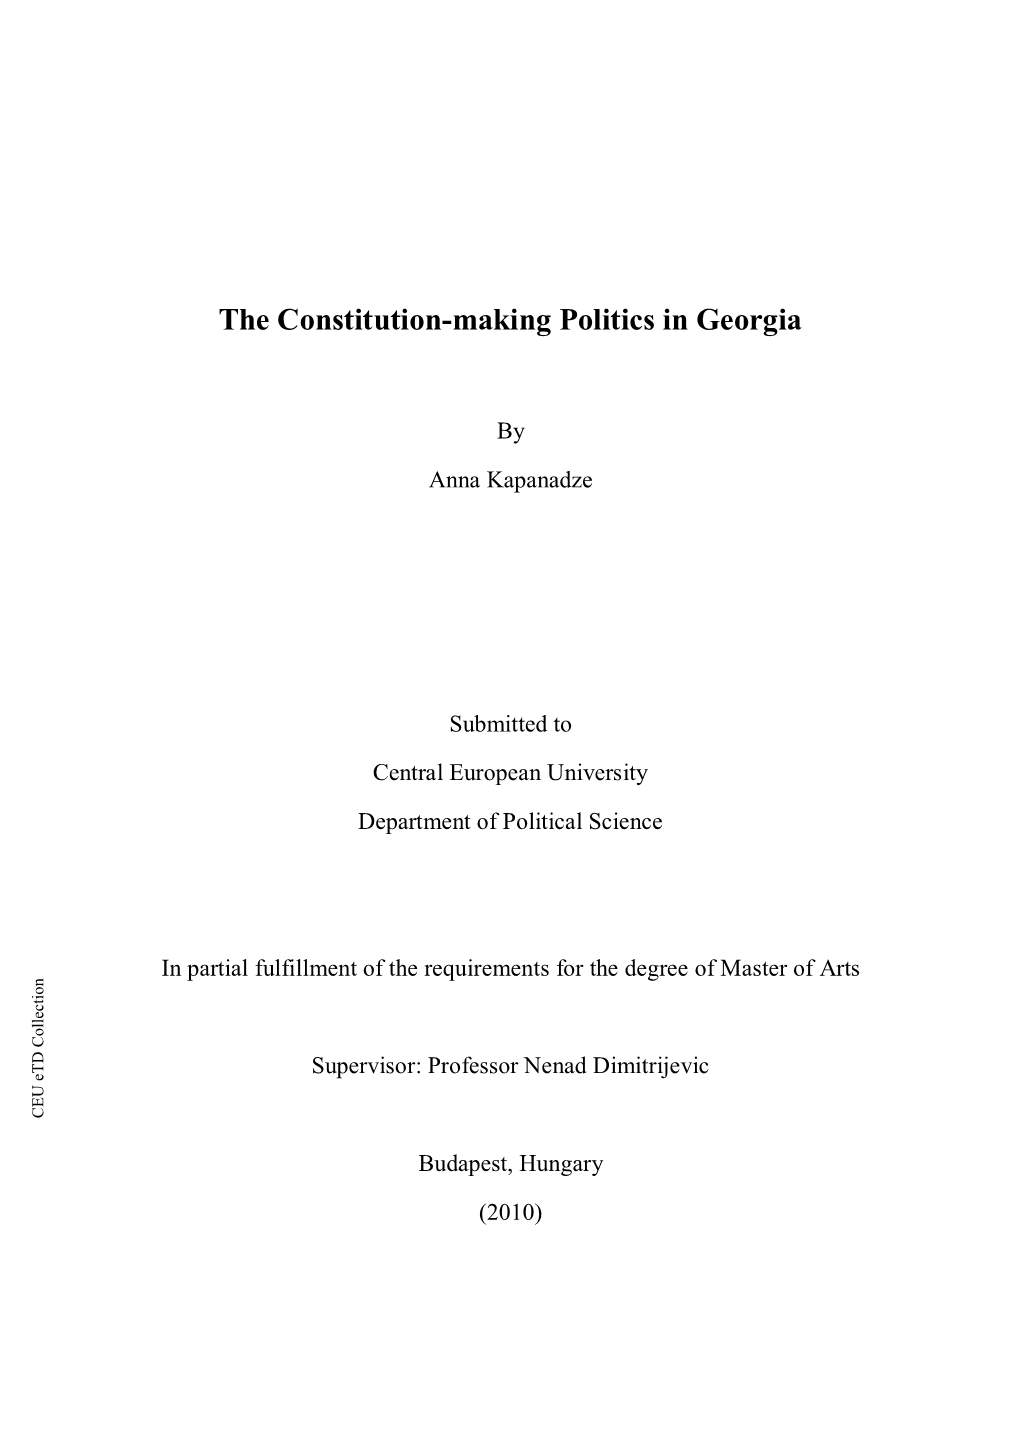 The Constitution-Making Politics in Georgia